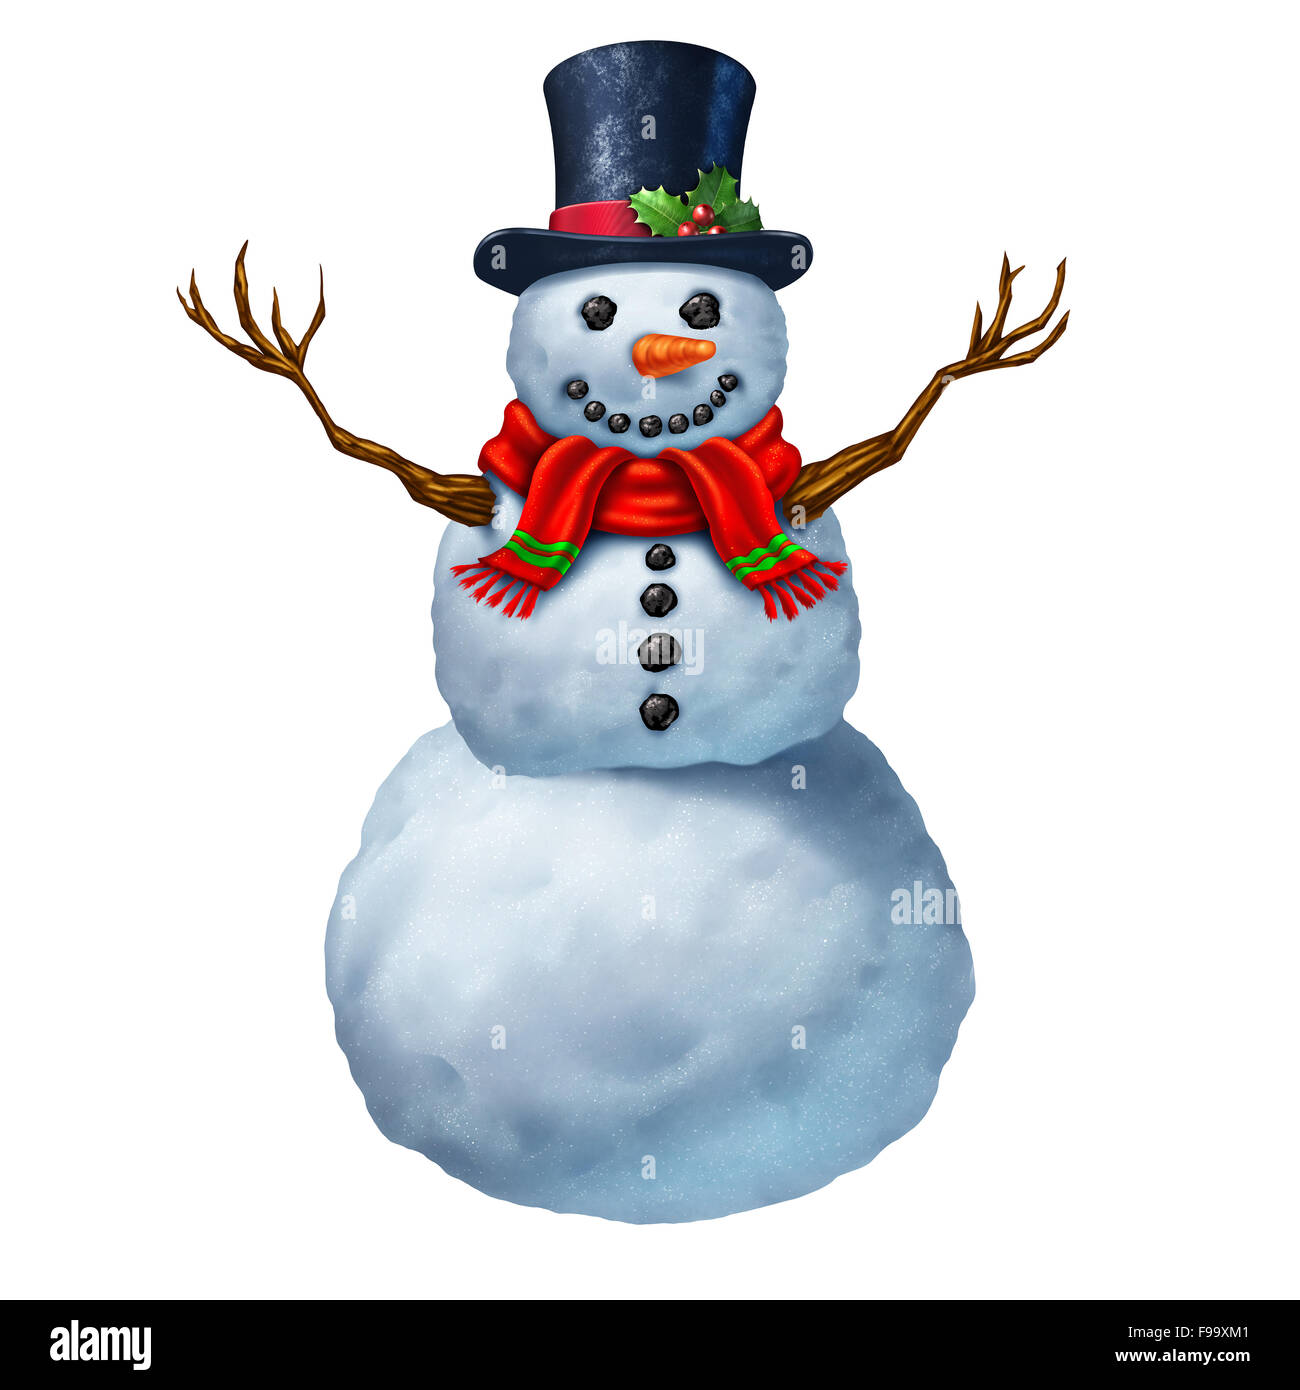 Snowman carácter aislado sobre un fondo blanco como una tradicional celebración invernal mágica Icono y símbolo de la temporada festiva de nevar y la nieve caída desempeñar actividad. Foto de stock